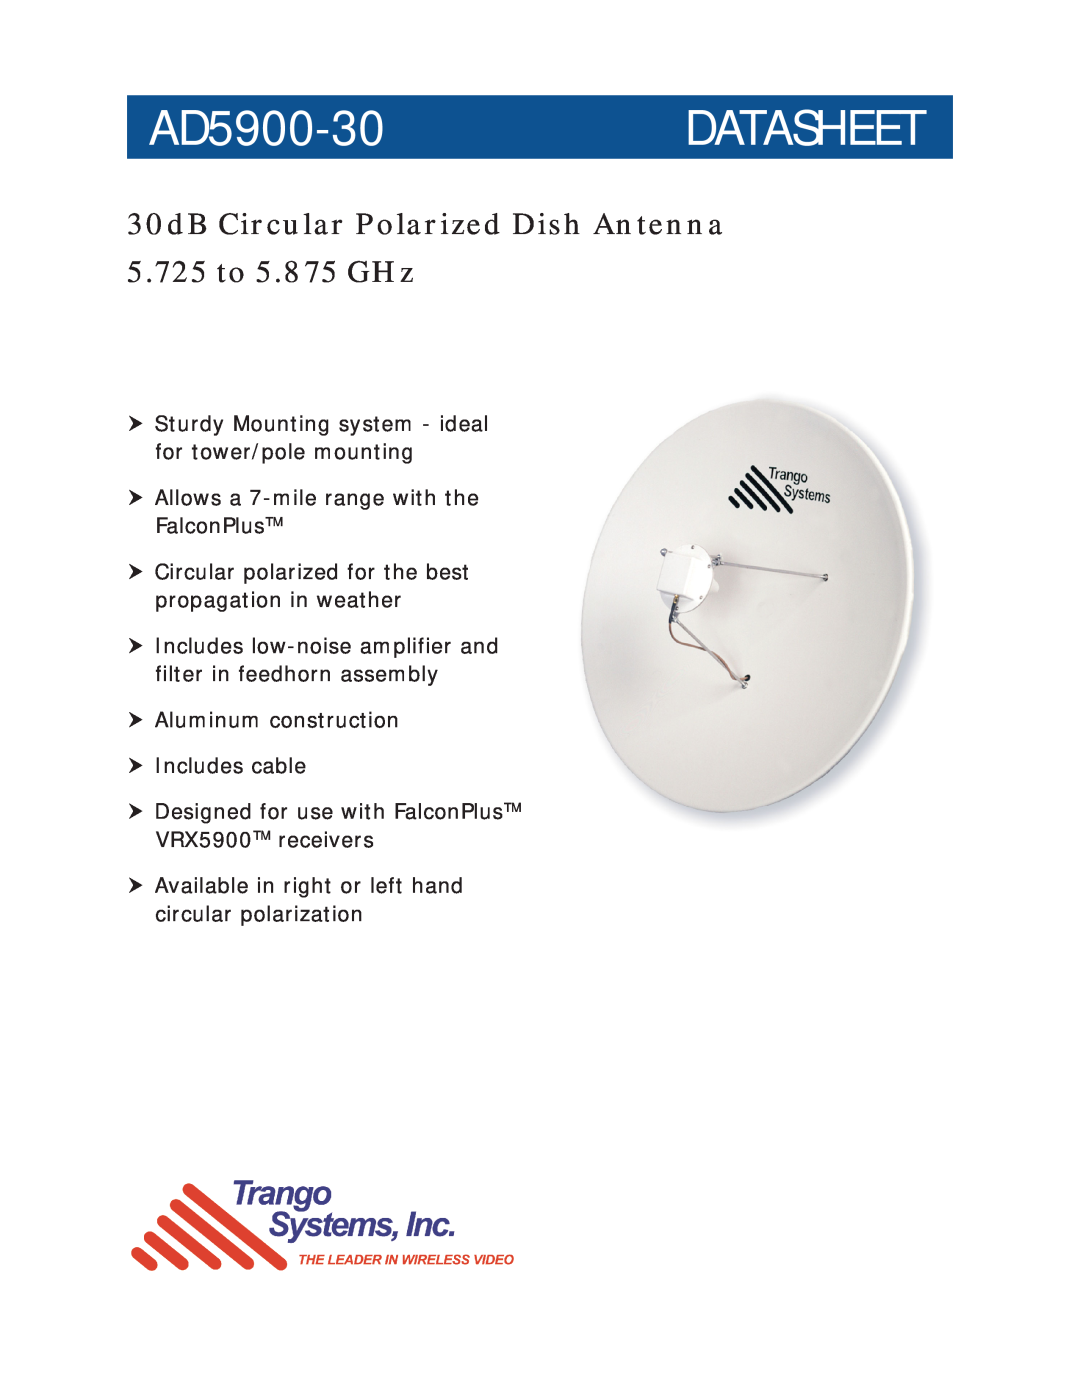 Trango Broadband AD5900-30-R manual AD5900-30DATASHEET, 30dB Circular Polarized Dish Antenna 5.725 to 5.875 GHz 